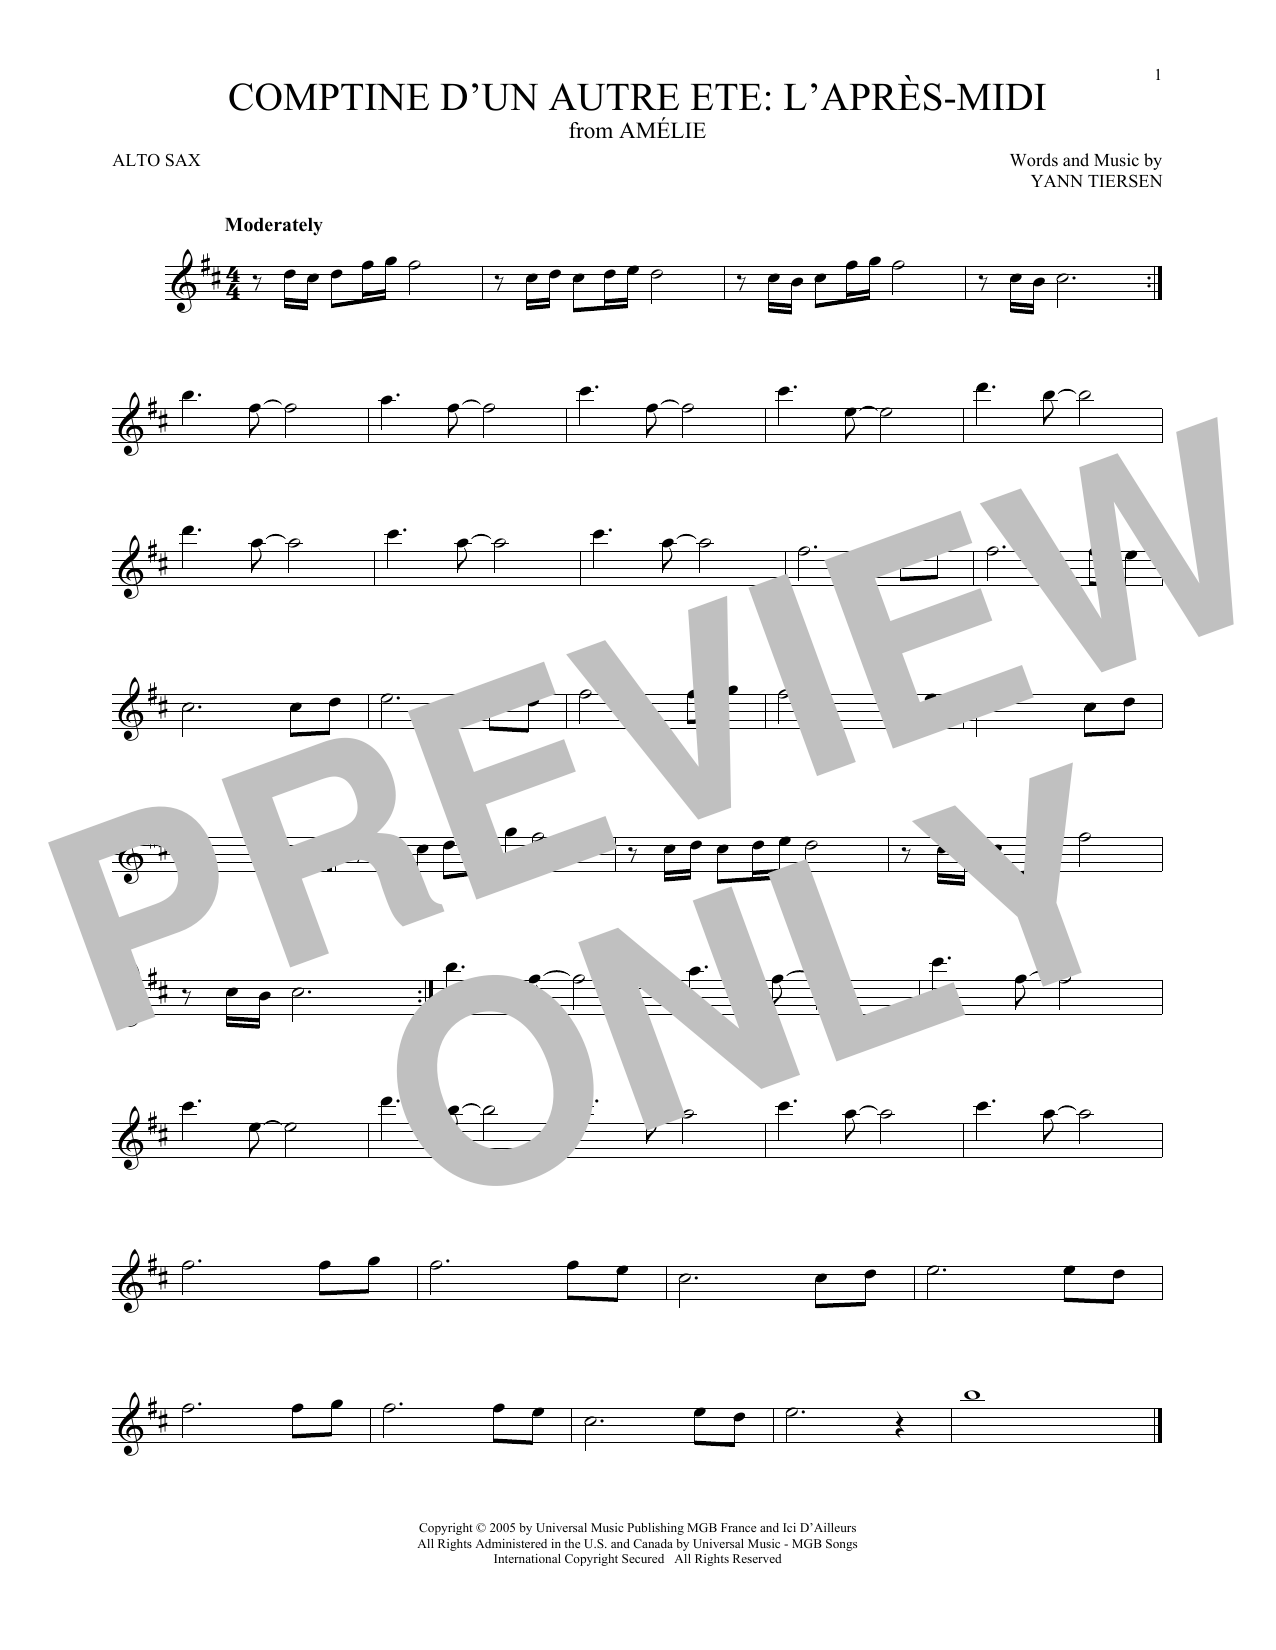 Yann Tiersen Comptine d'un autre été: L'après-midi (from Amelie) Sheet Music Notes & Chords for Tenor Sax Solo - Download or Print PDF